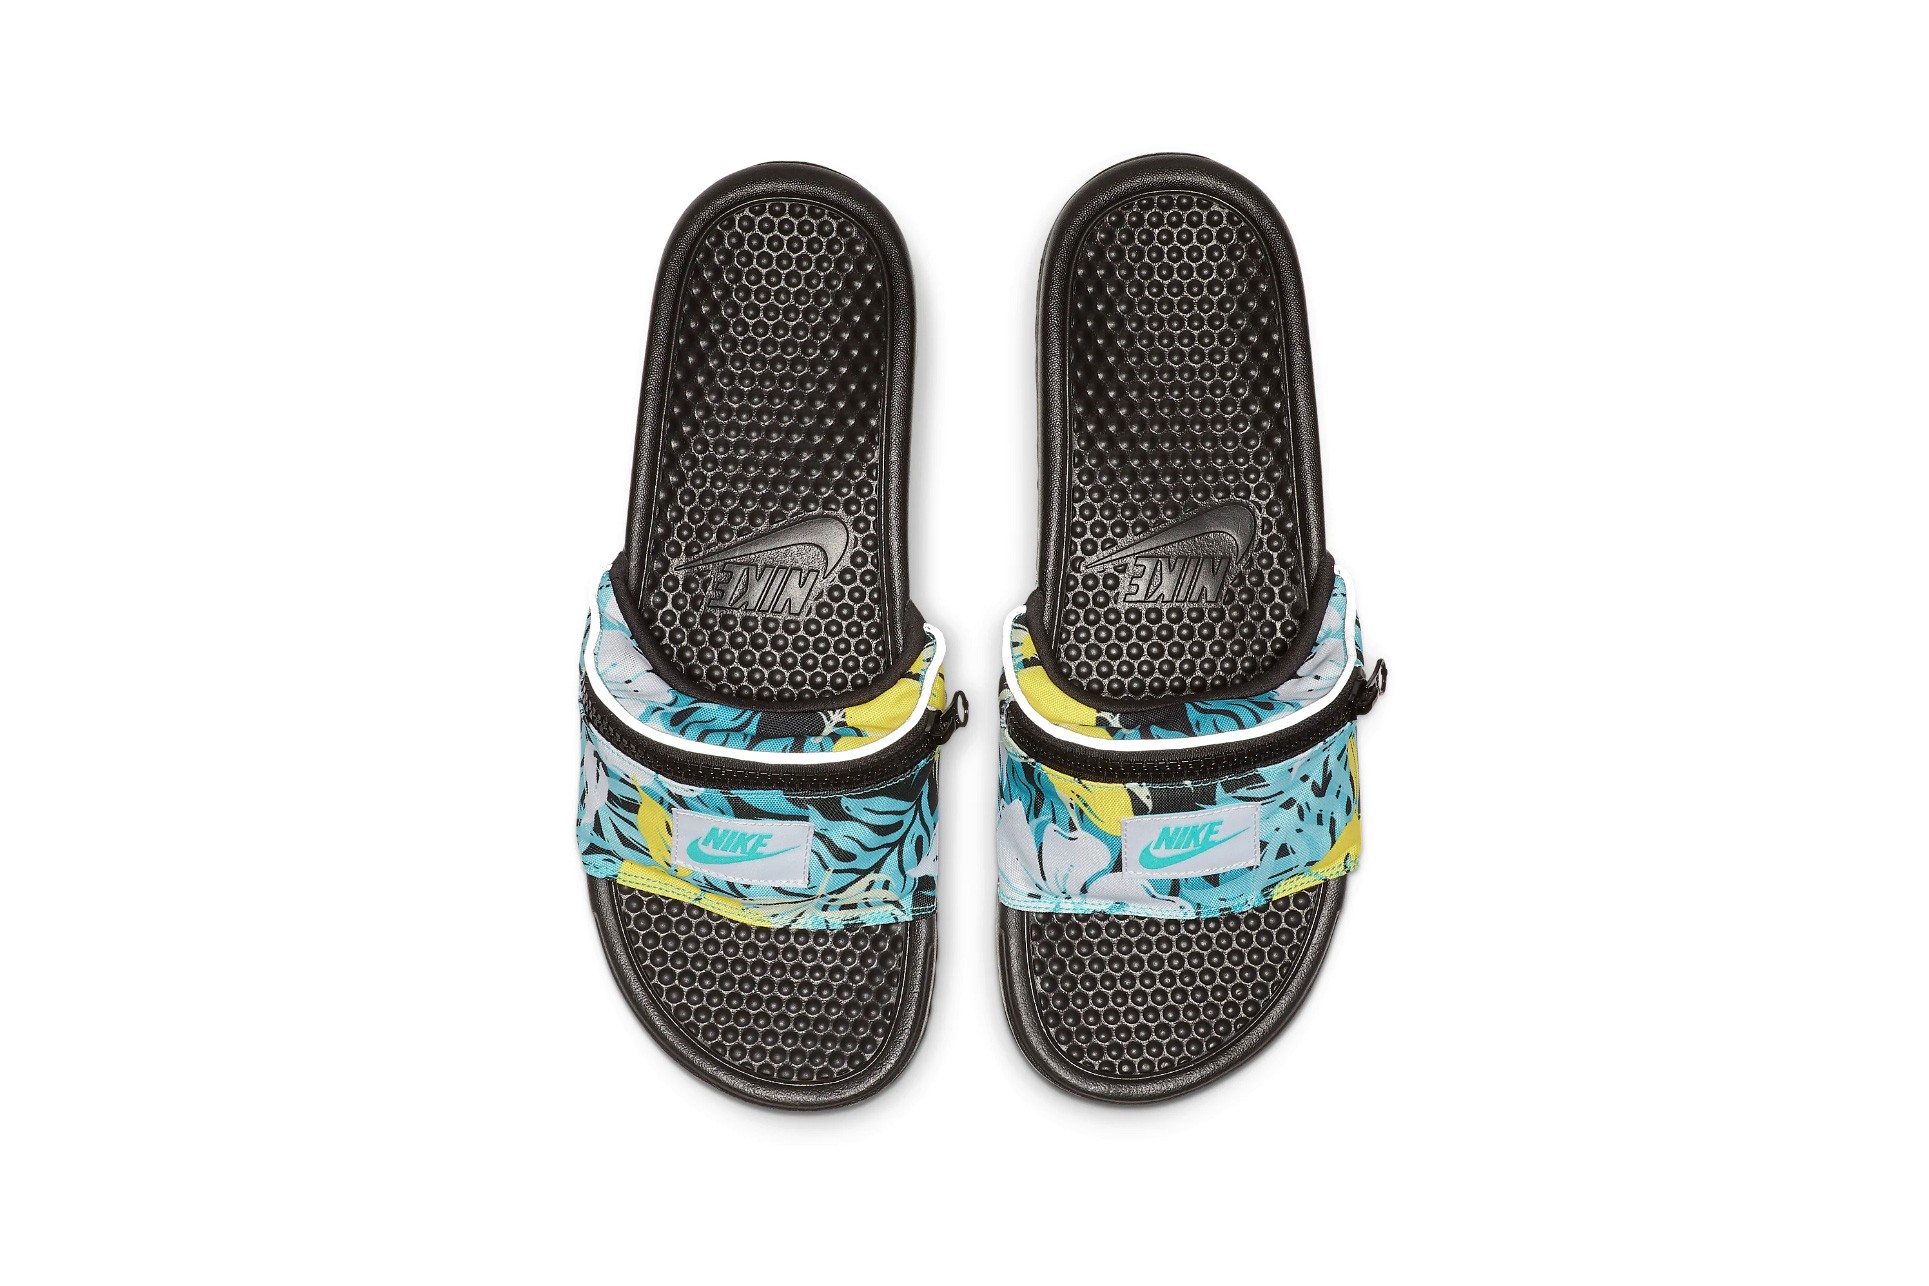 nike-benassi-jdi-fanny-pack-printed-slides-sandals-spring-summer-2019-release-05